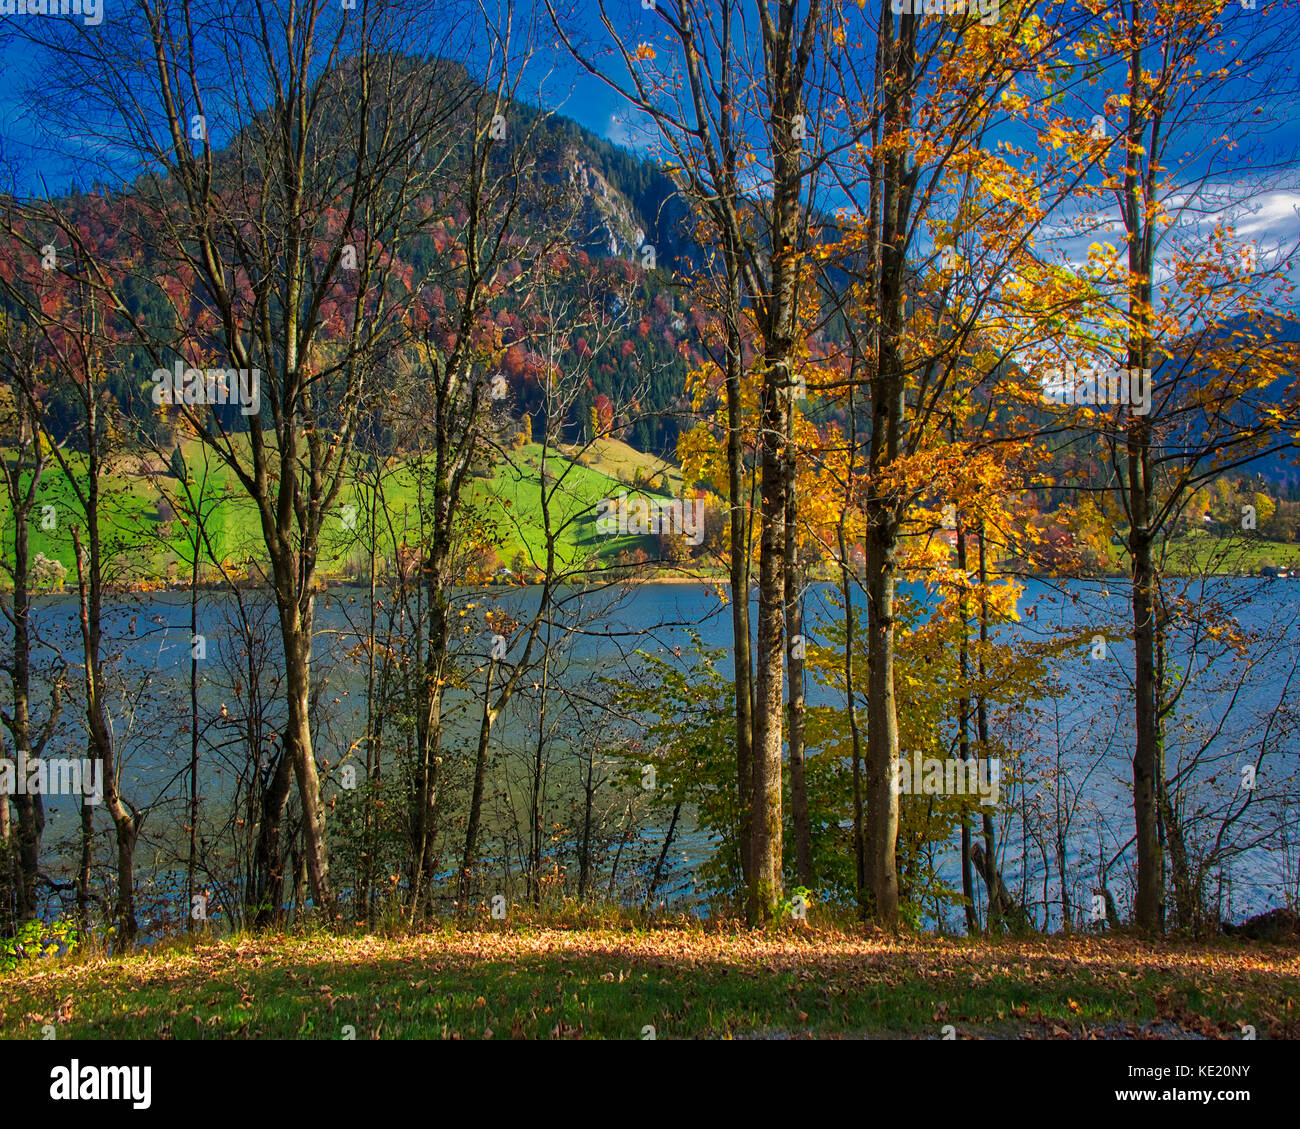 De - bavaria : scène d'automne le long du lac schliersee Banque D'Images